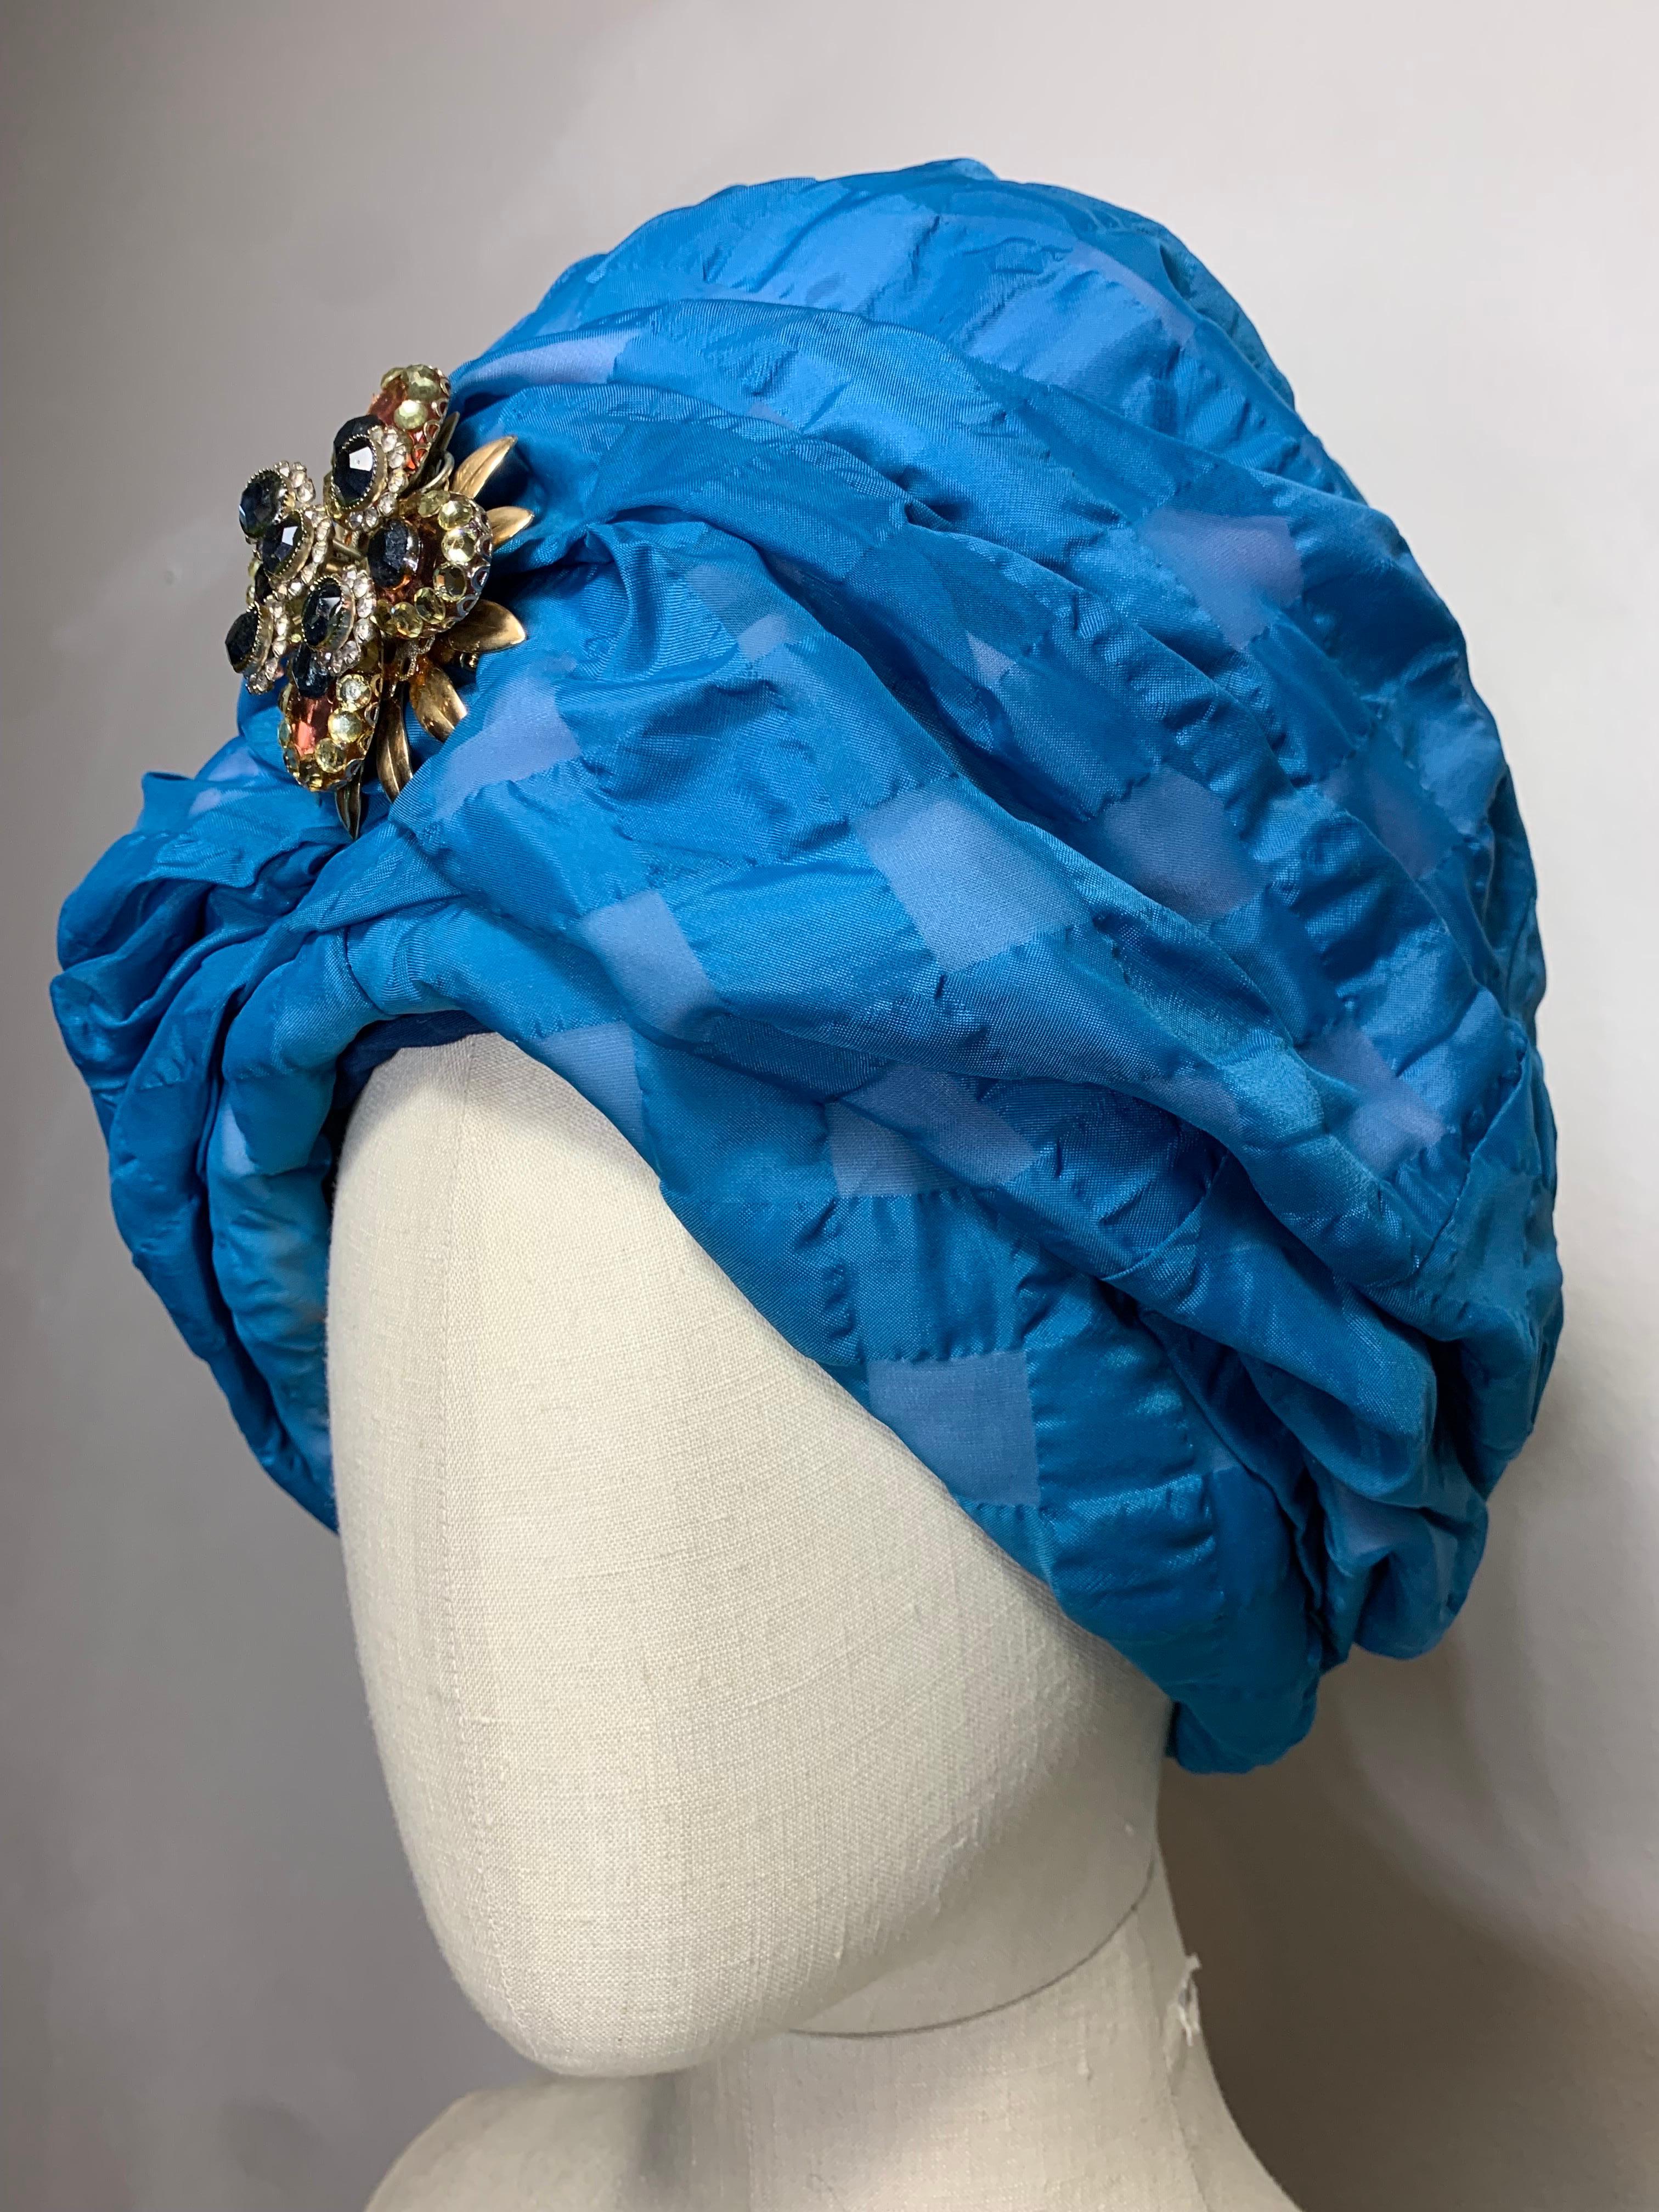 Custom Made Frühling/Sommer Azure Blue Seersucker Check gepolsterte Turban w Coordinating Jeweled Brosche:  Ein prächtiger Blauton mit einer atemberaubenden Silhouette.  US Größe 7 1/2.  

In unserem 1Dibs Store finden Sie viele weitere Exemplare